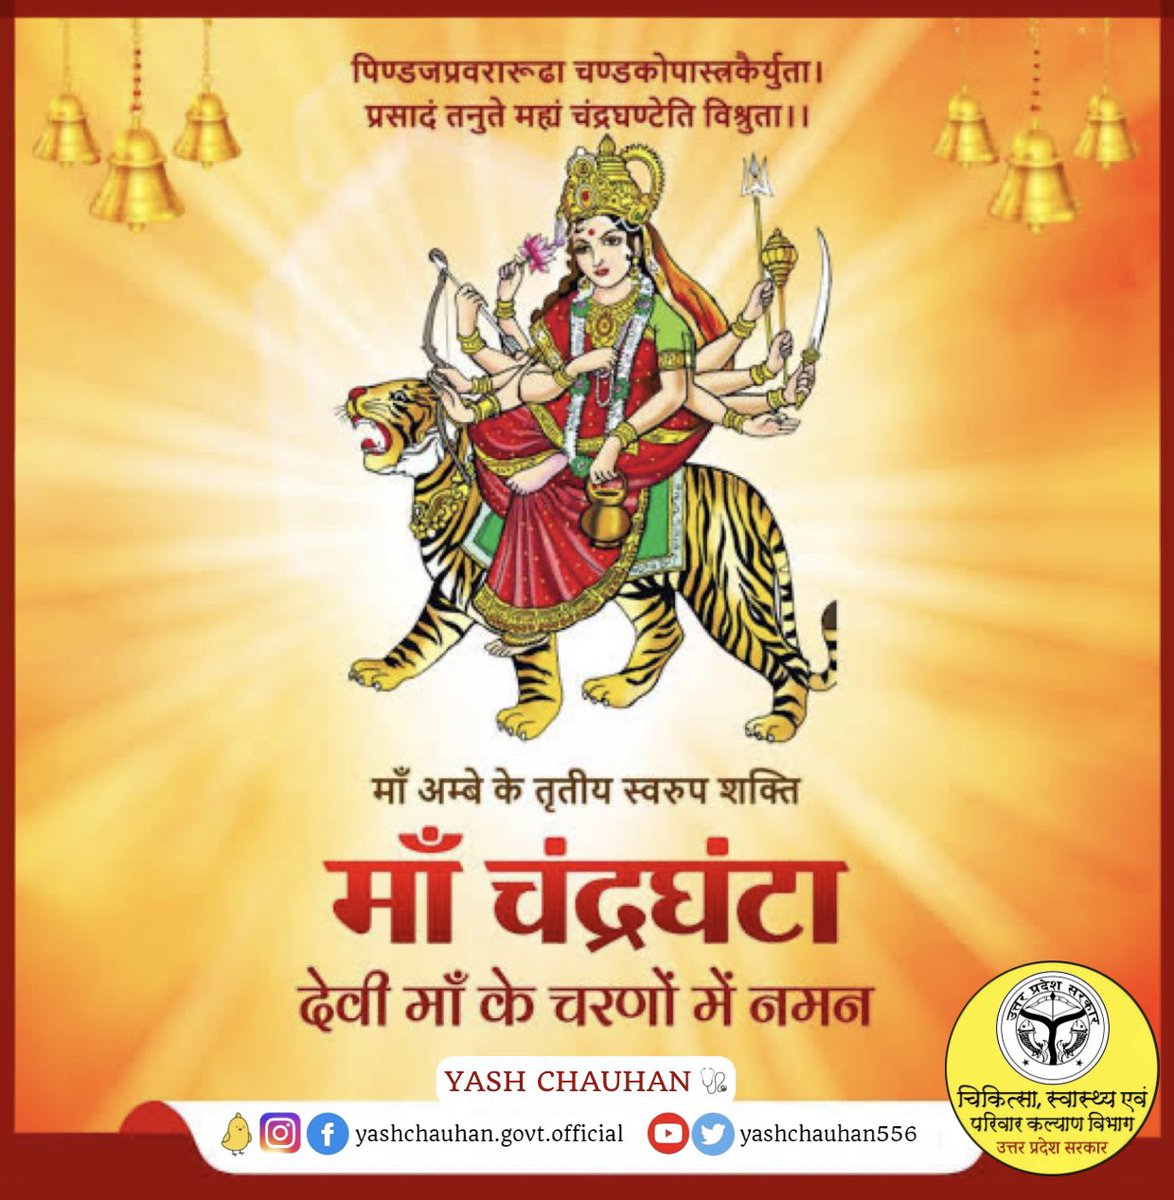 माँ अम्बे के तृतीय स्वरूप शक्ति #माँ_चंद्रघंटा देवी माँ के चरणों में नमन। 🙏
#MaaChandraghanta 
#Navaratri 
#ChaitraNavaratri_2023